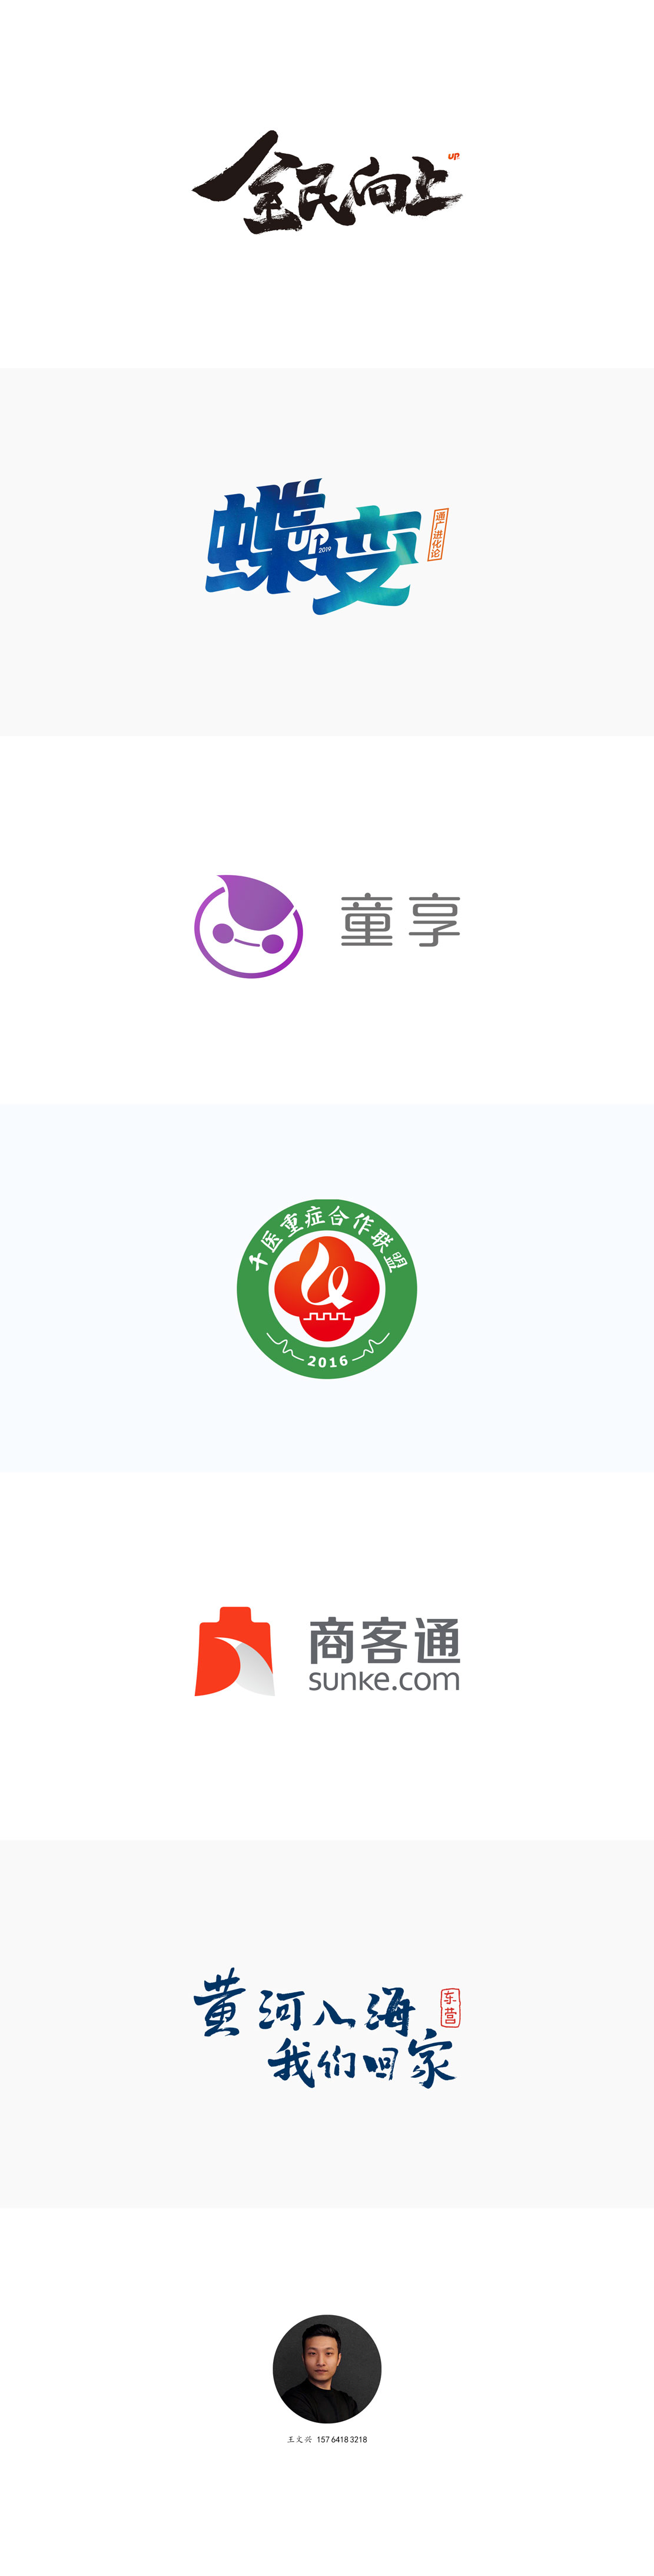 王文兴2019年度品牌标志、图形、符号部分设计集合。